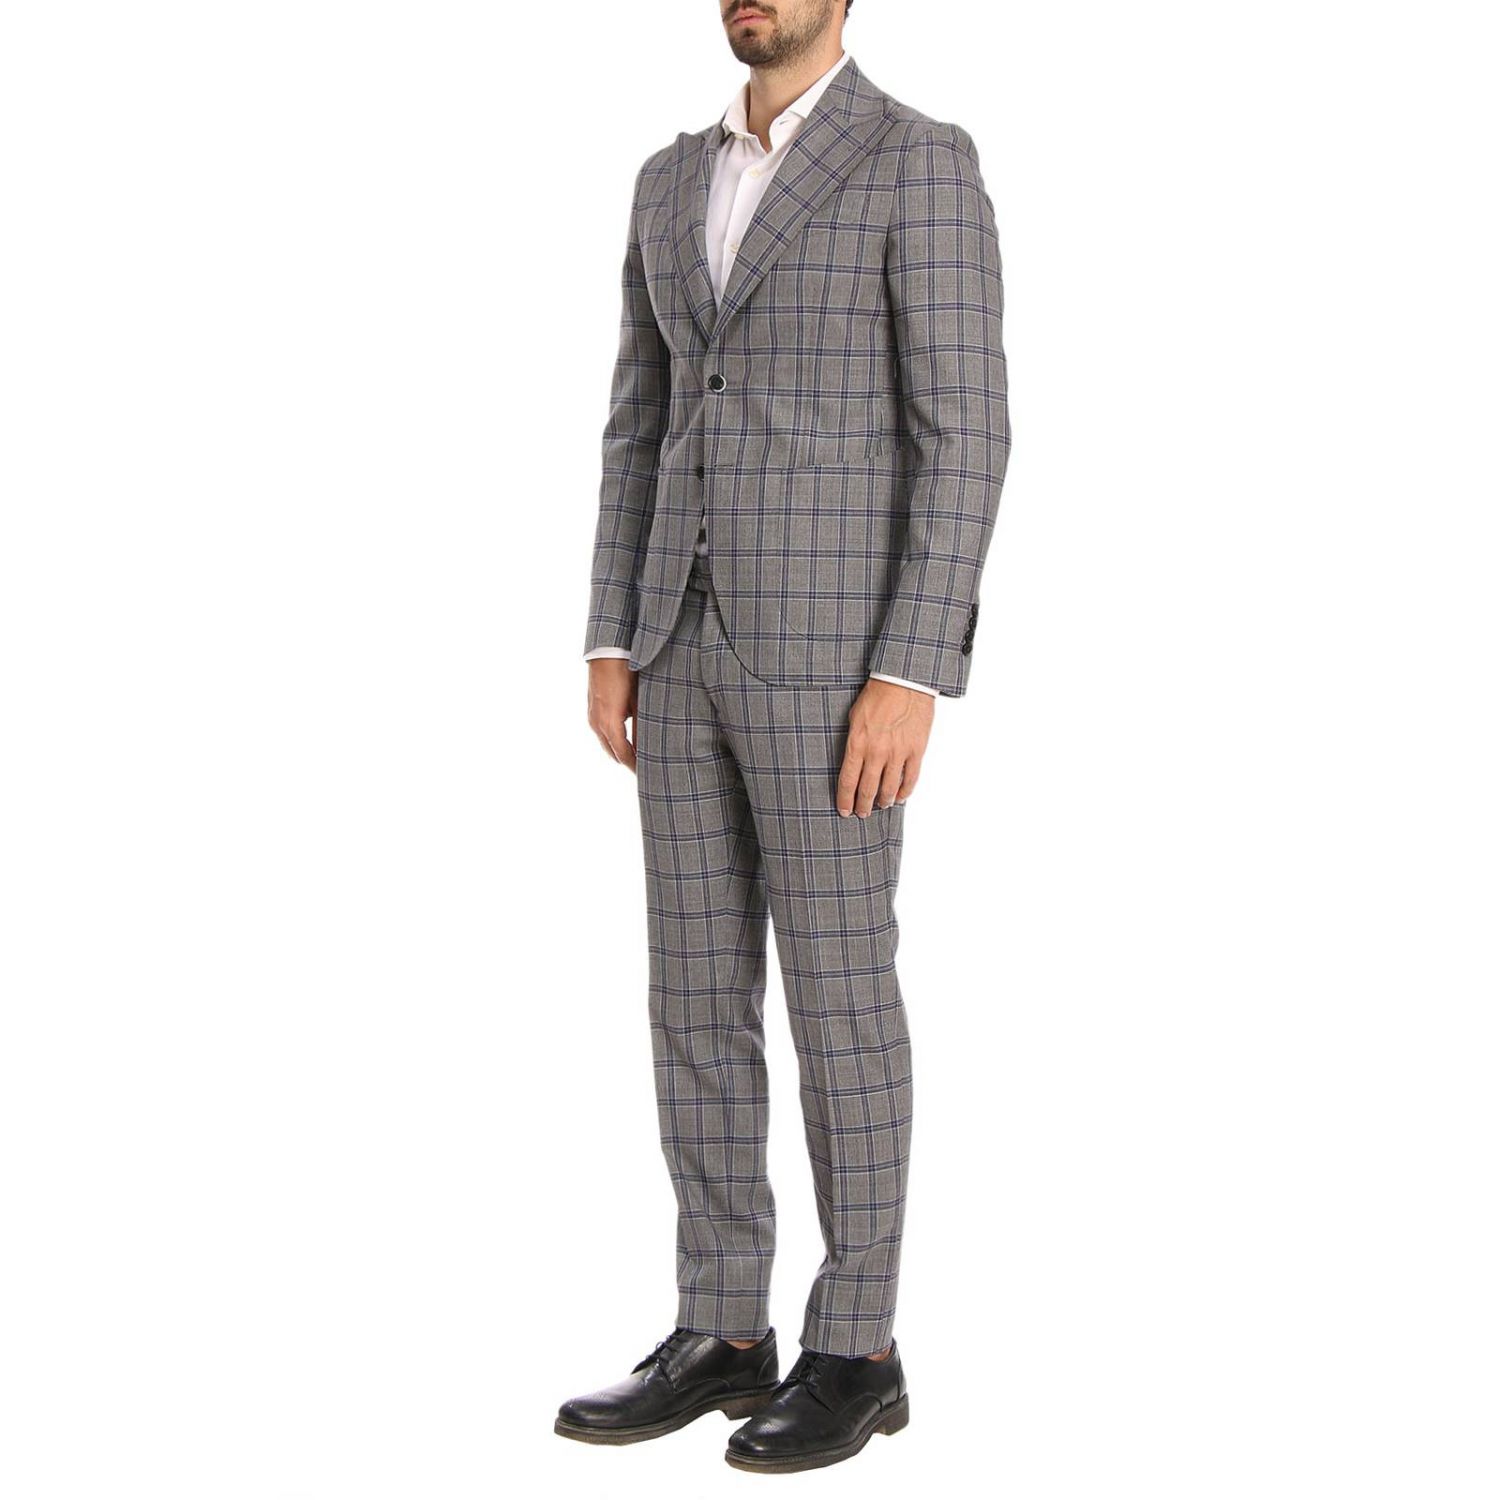 L.b.m. 1911 Outlet: Suit men | Suit L.b.m. 1911 Men Grey | Suit L.b.m ...